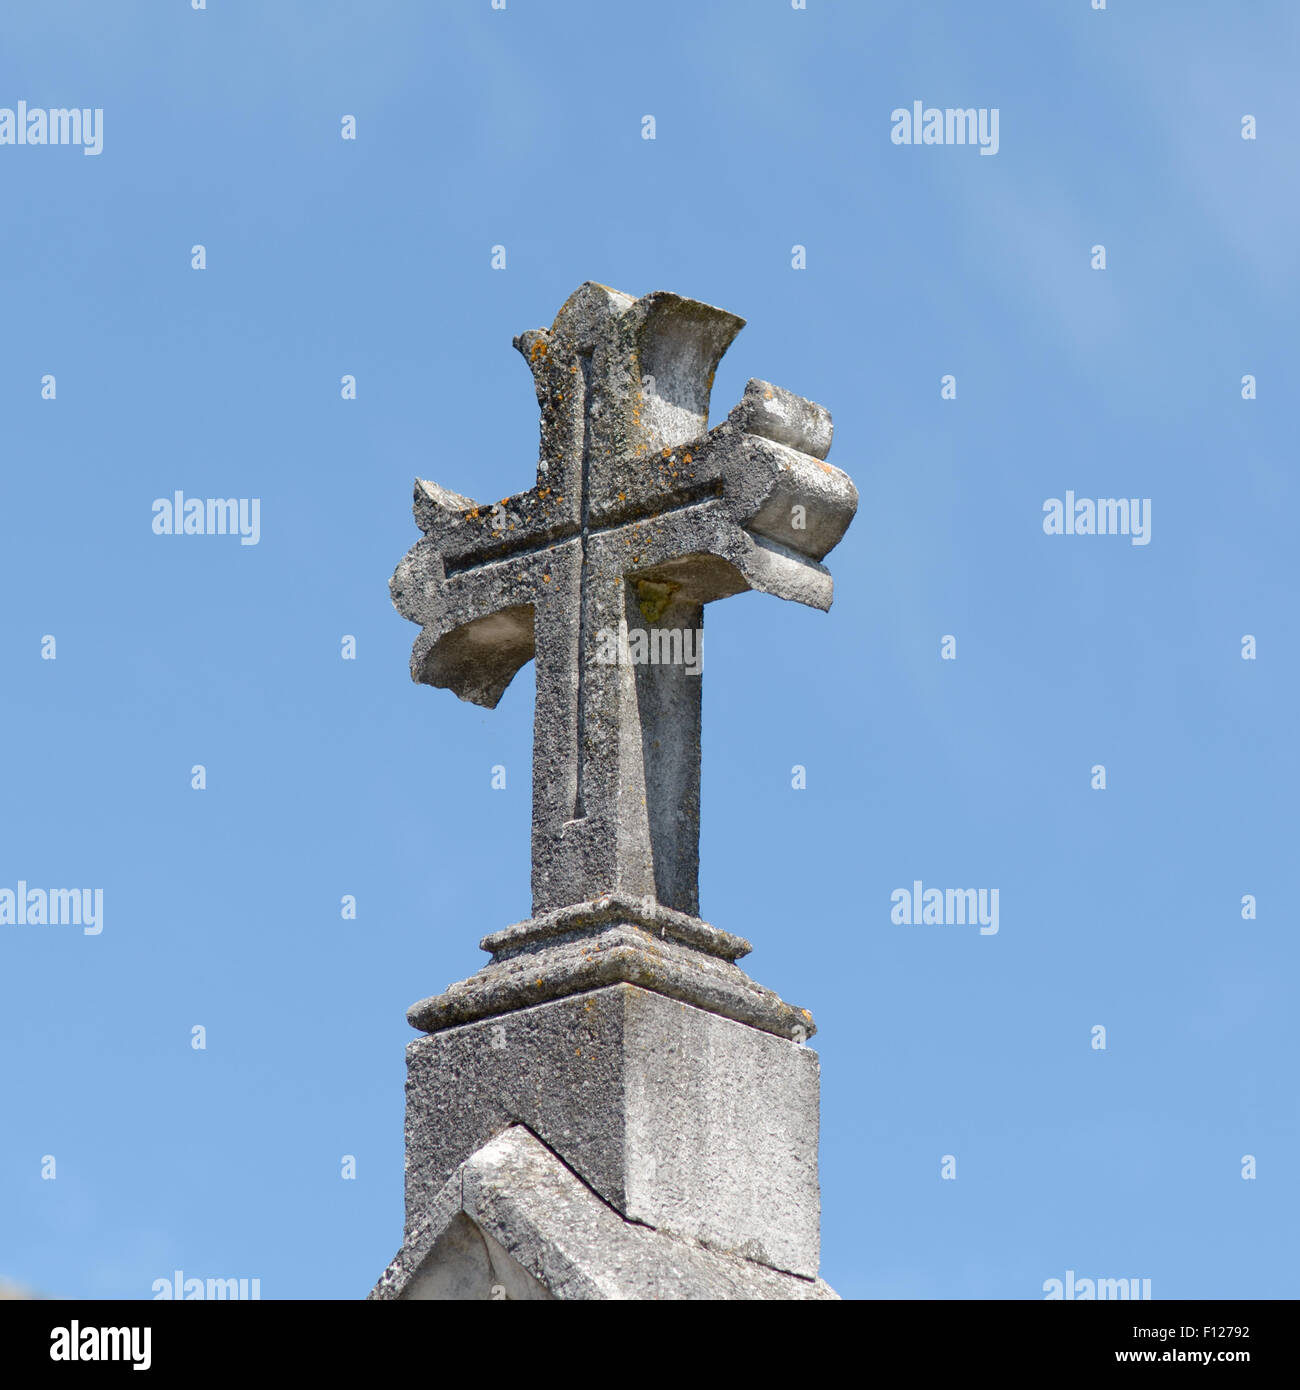 Christian Pierre croix sur tombe, dans le cimetière de St Thomas de Conac, région des Charentes, France Banque D'Images